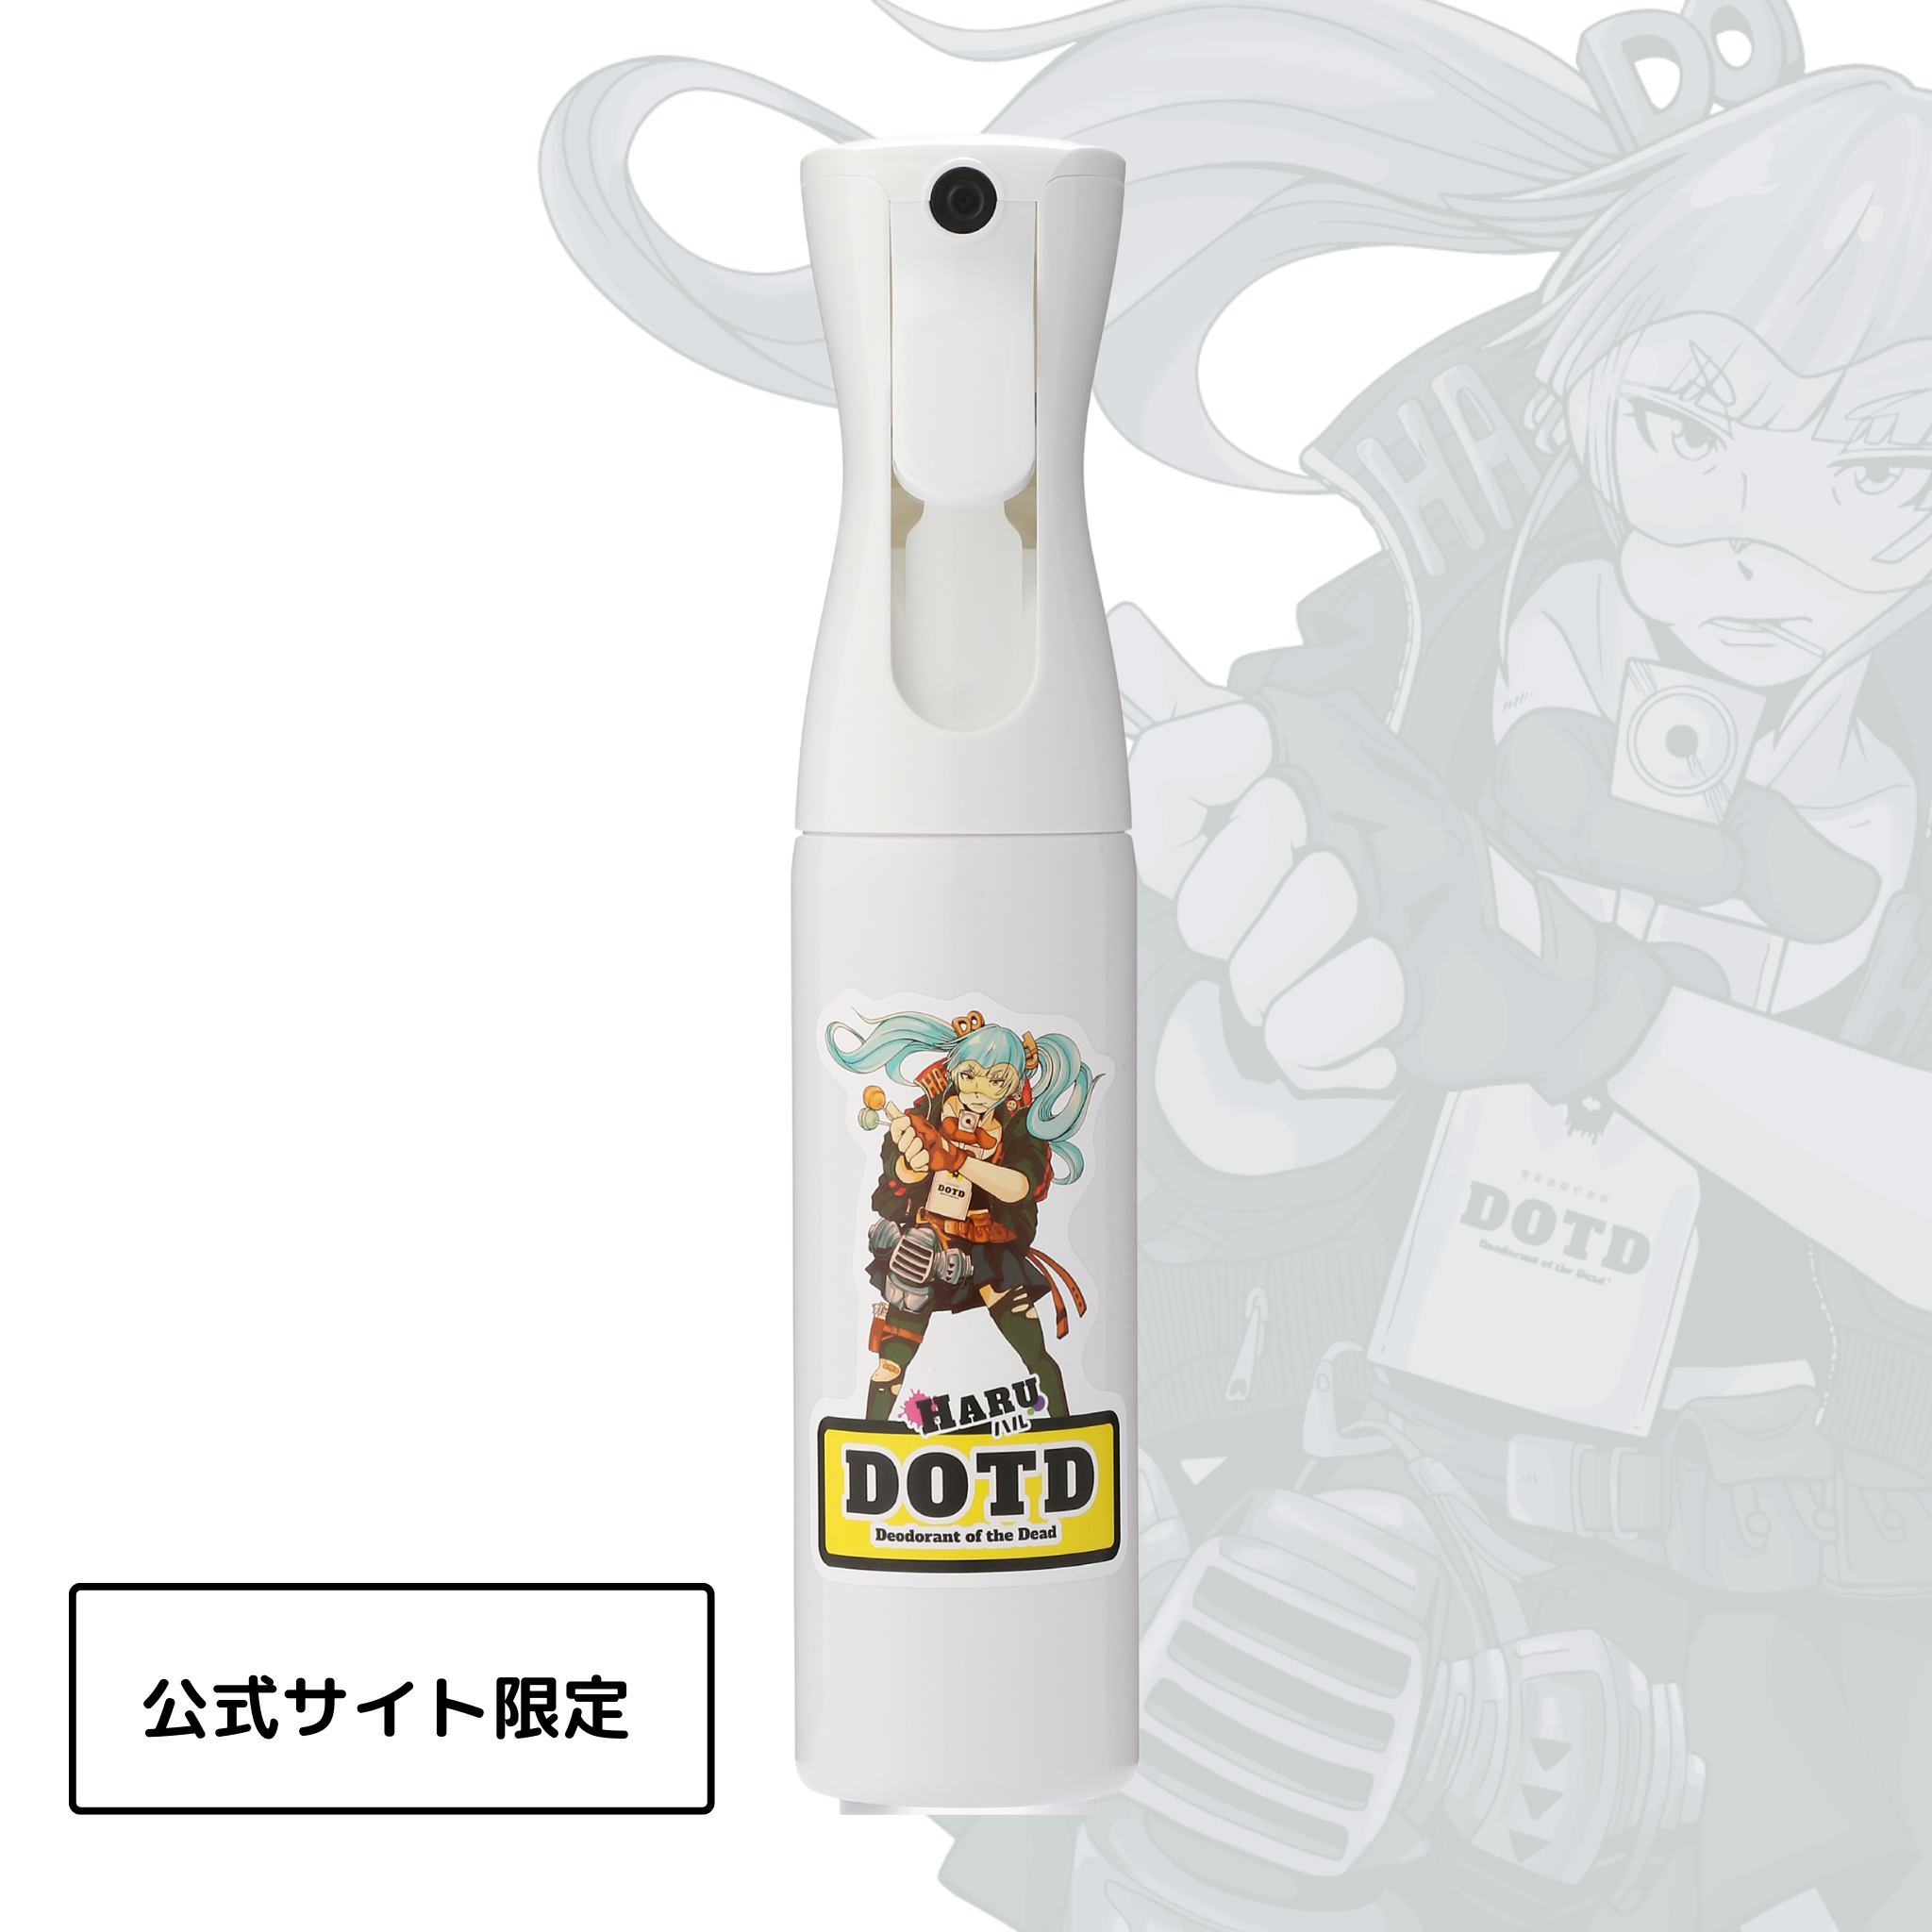 【公式サイト限定】DOTD詰替専用ミストボトル【HARUデザイン】